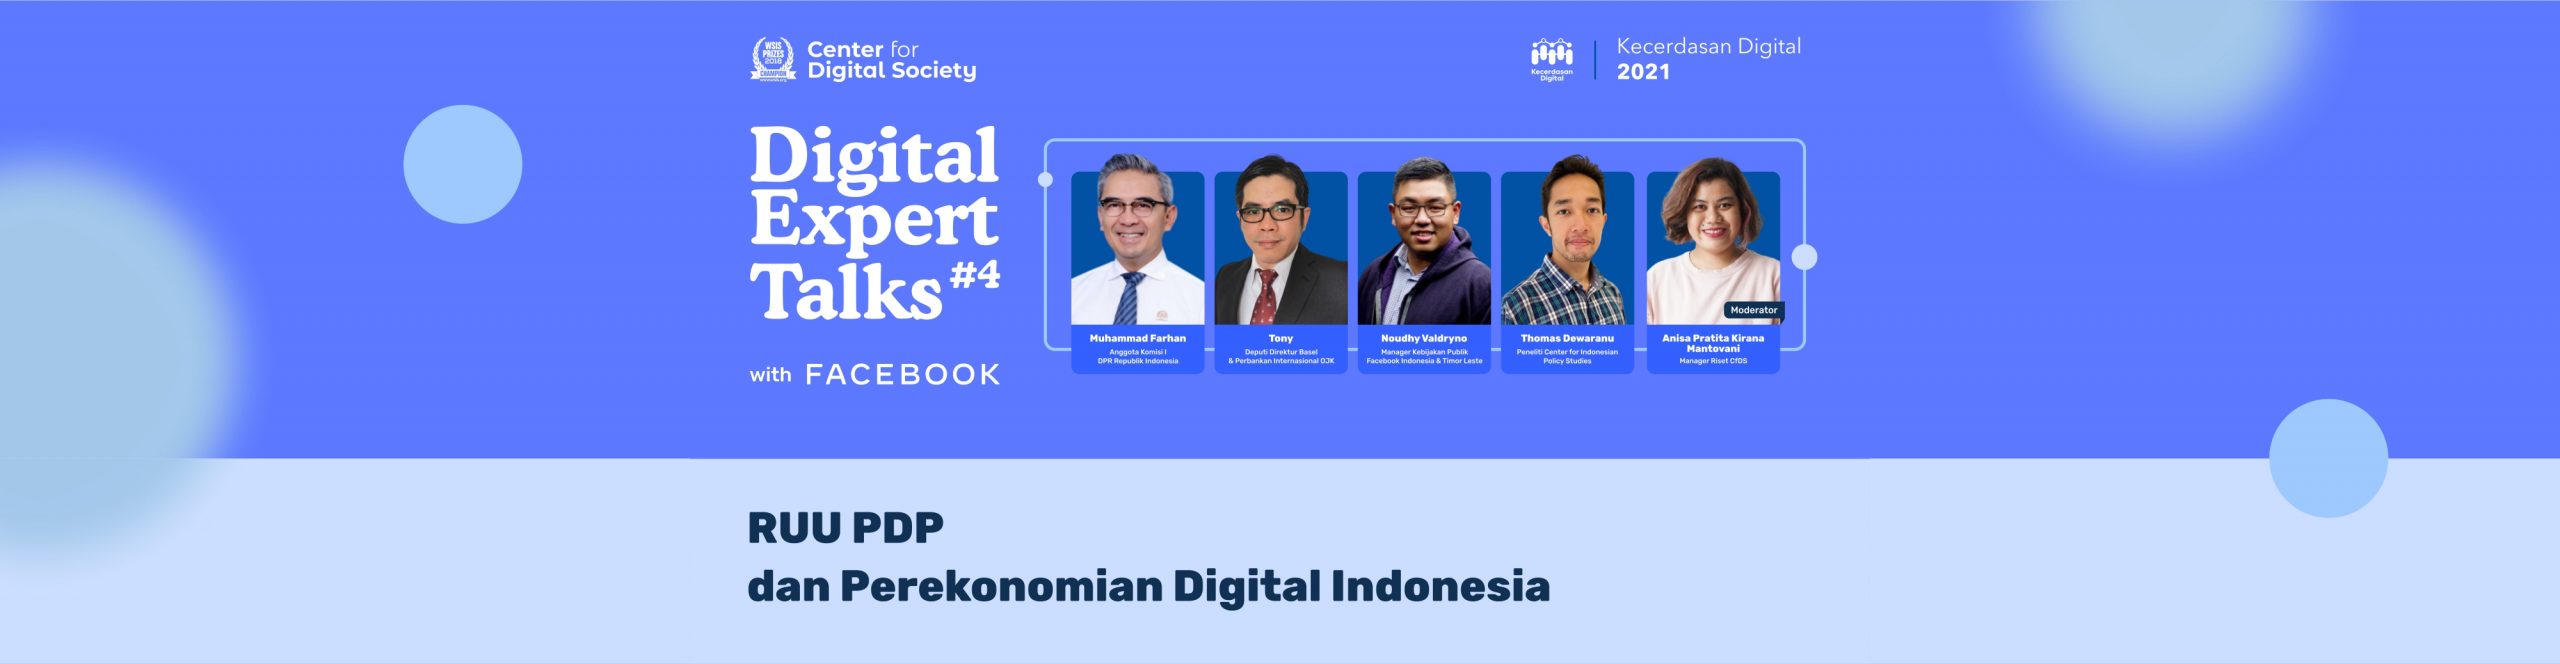 SIARAN PERS Digital Expert Talks #4 dengan Facebook Indonesia